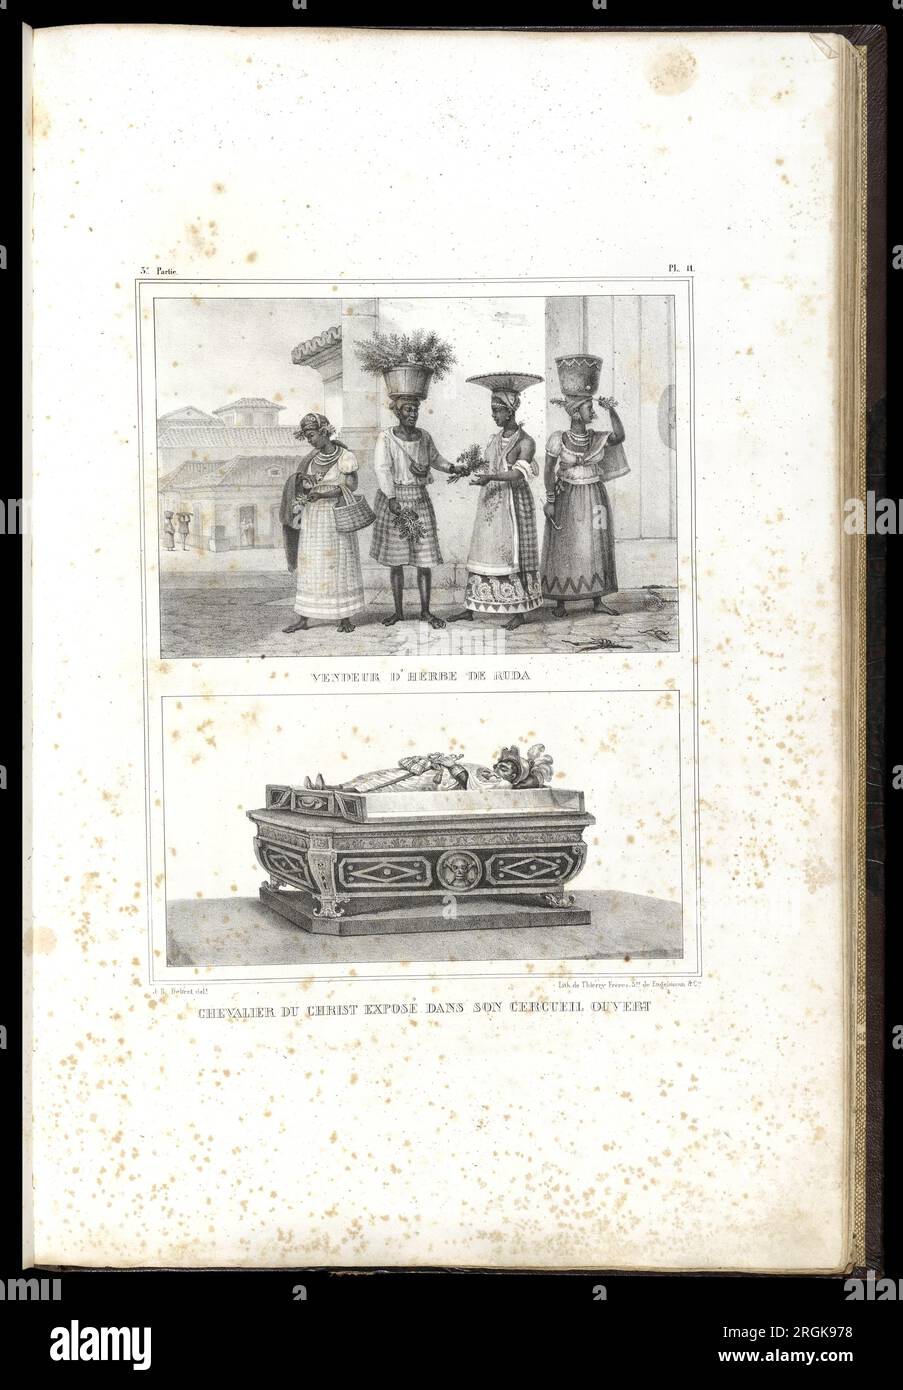 Chevalier du Christ exposè dans son cercueil ouvert 1839 by Thierry Frères Stock Photo